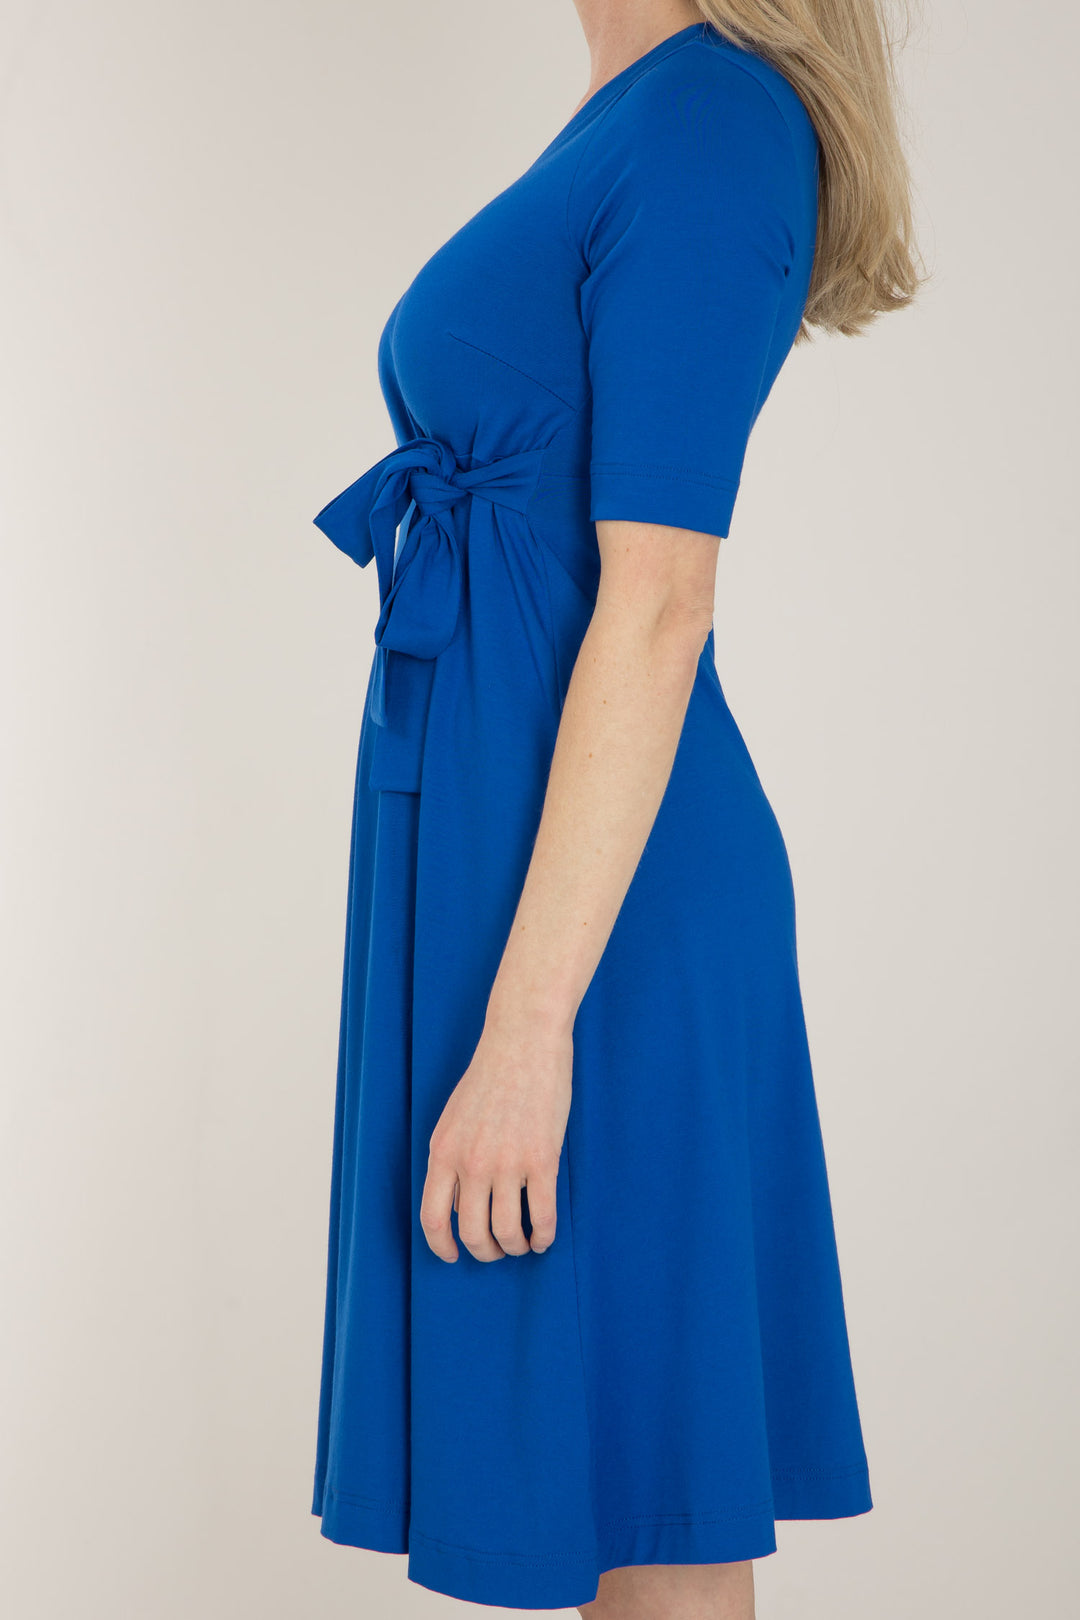 Loose fit short wrap jersey dress - Cobolt blue - Knälång, omlottklänning i trikå